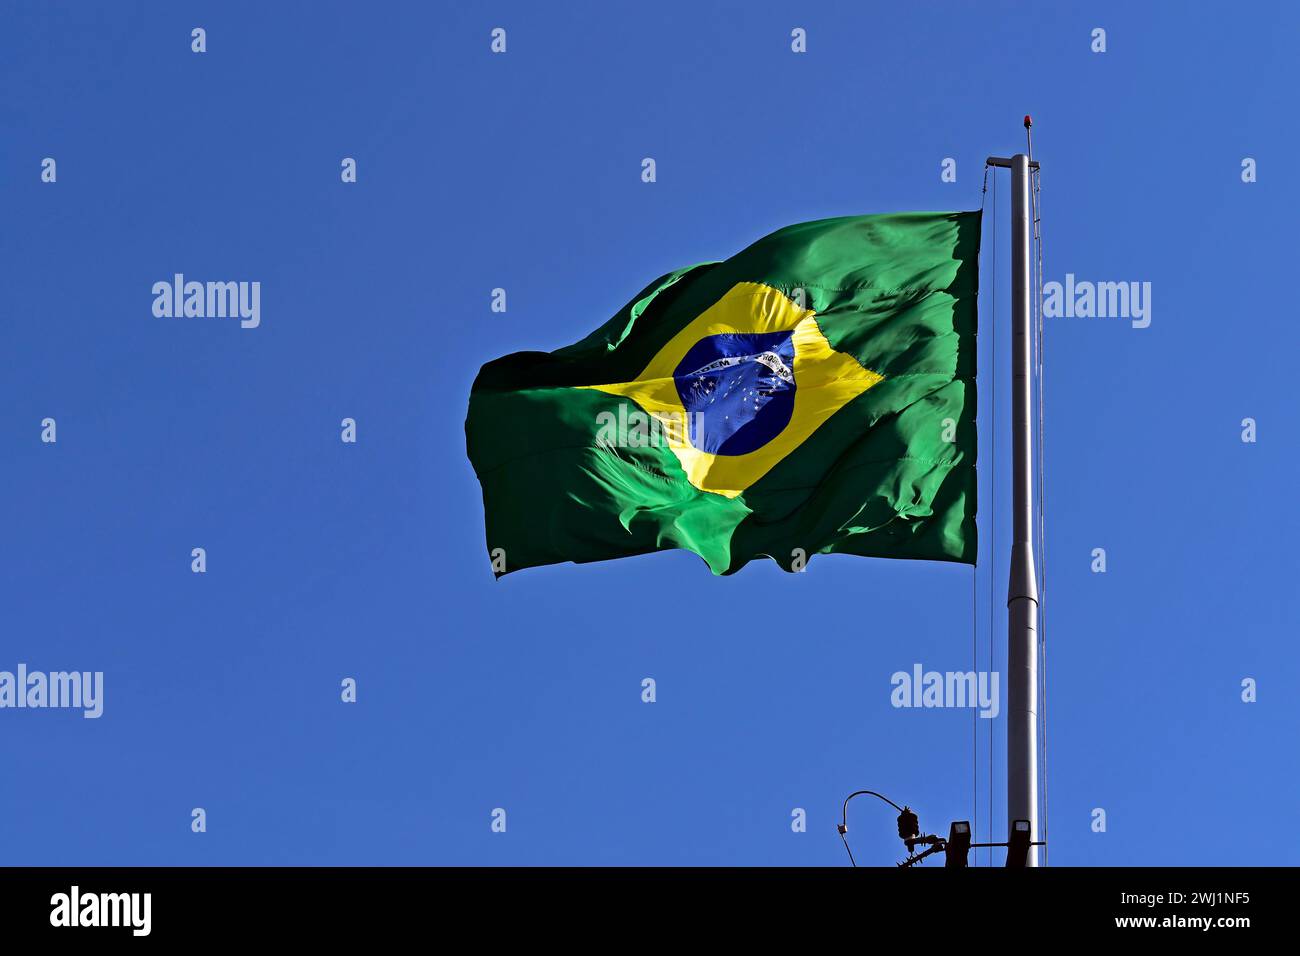 Drapeau brésilien et ciel bleu à Ribeirao Preto, Sao Paulo, Brésil Banque D'Images